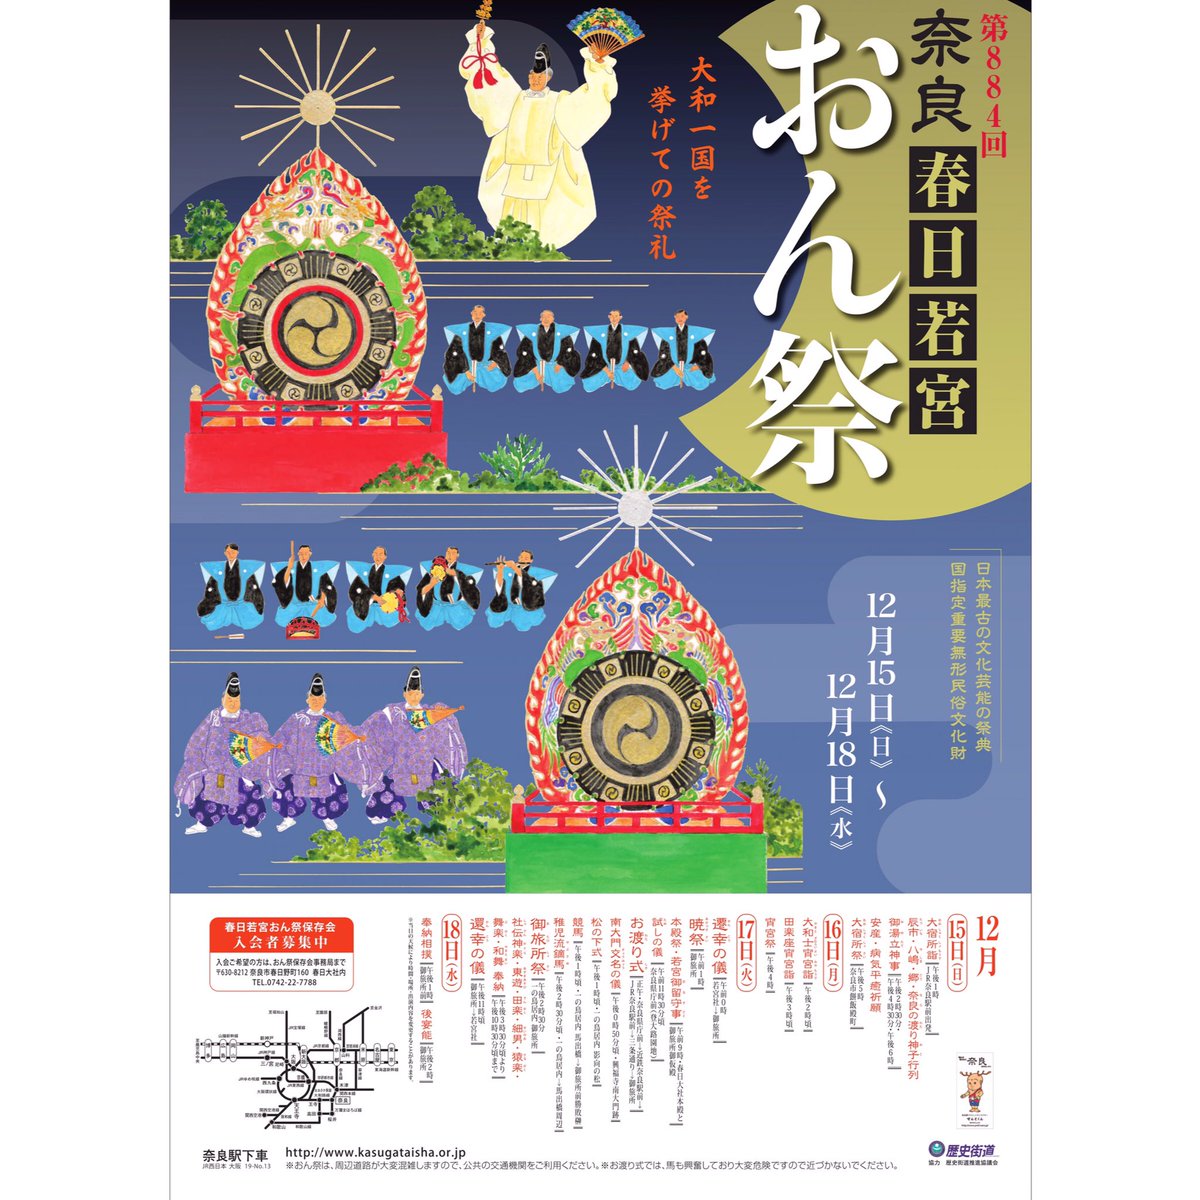 毎年12月15日〜18日「#春日若宮おん祭 」が開催されます。
#大和一国 の祭りといわれ、今年で884回目を迎える #歴史 ある行事です。

#奈良 #奈良観光 #奈良旅行 
#おん祭 #春日大社 #時代行列 #奈良公園 #伝統行事 
#nara #deerpark #narapark #traditionalevent #samurai